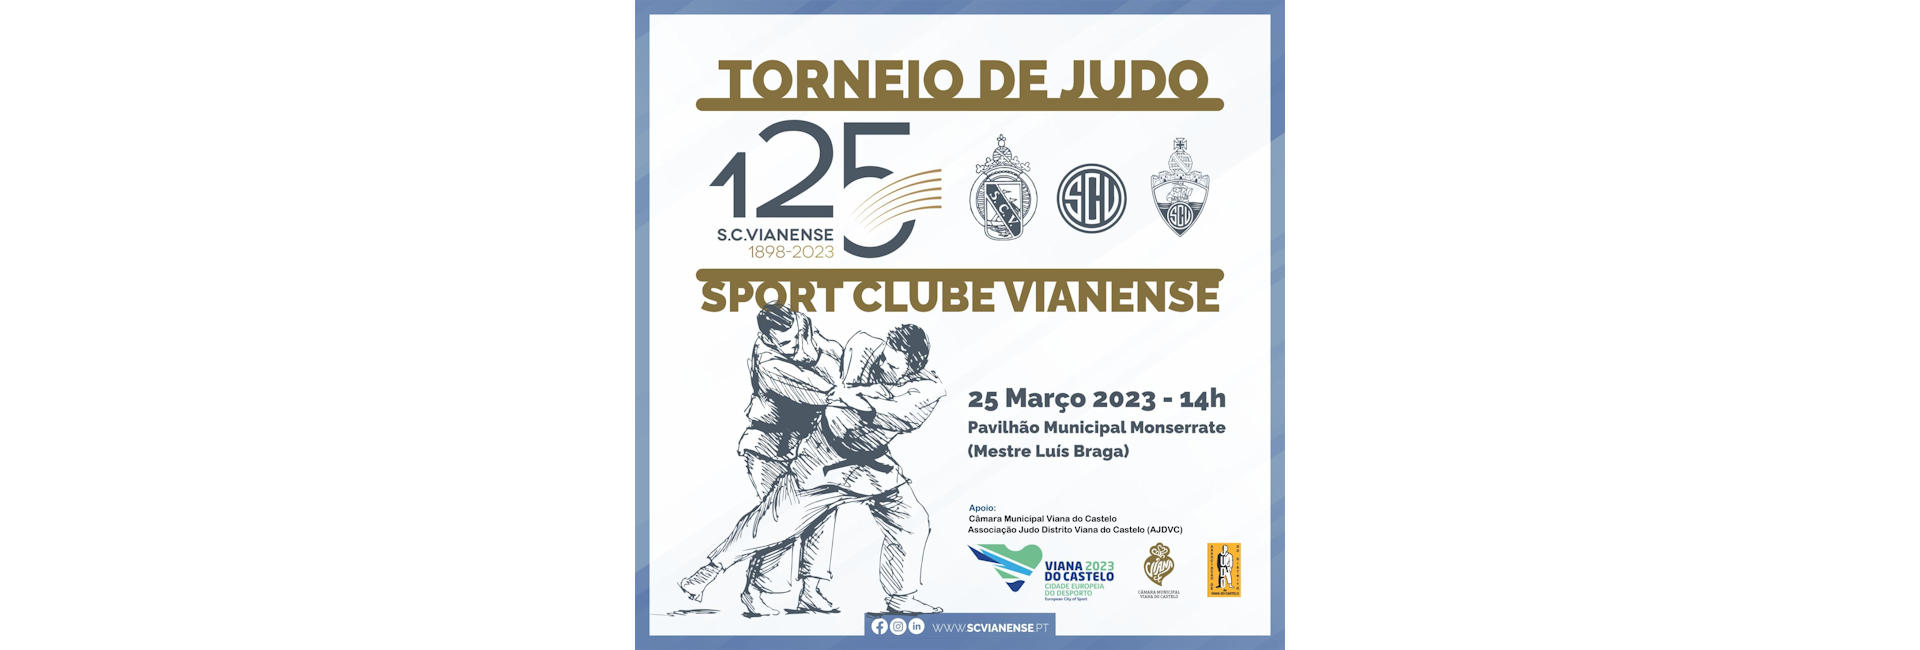 Torneio de Judo  Comemorativo dos 125º Aniversário do S.C.Vianense